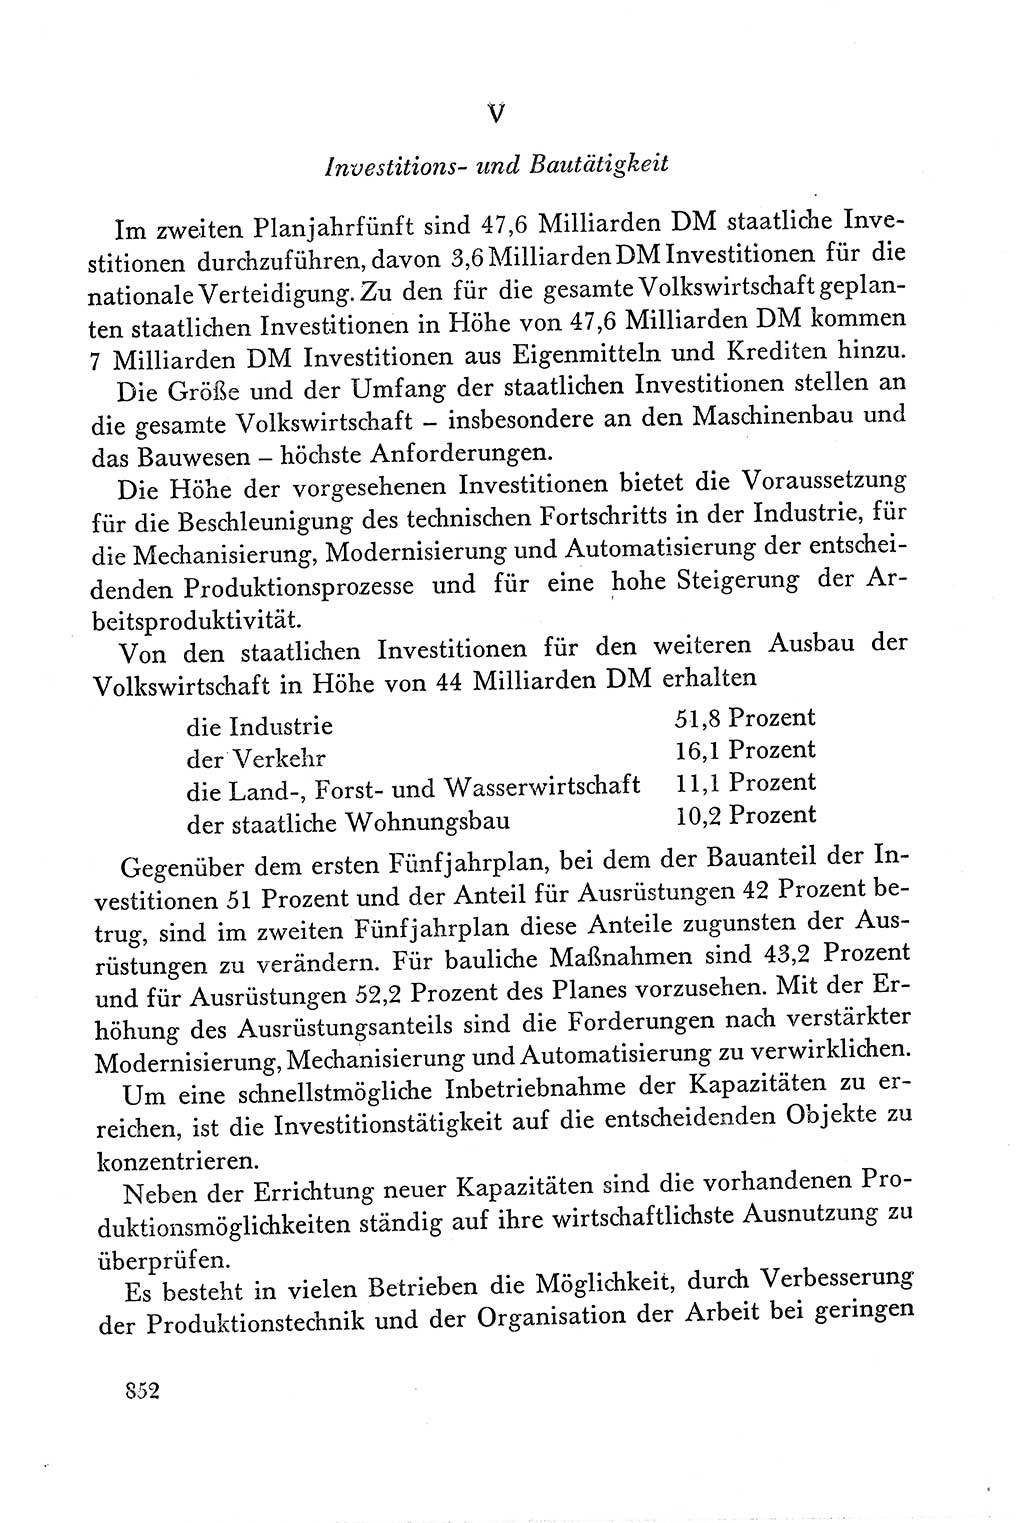 Dokumente der Sozialistischen Einheitspartei Deutschlands (SED) [Deutsche Demokratische Republik (DDR)] 1958-1959, Seite 852 (Dok. SED DDR 1958-1959, S. 852)